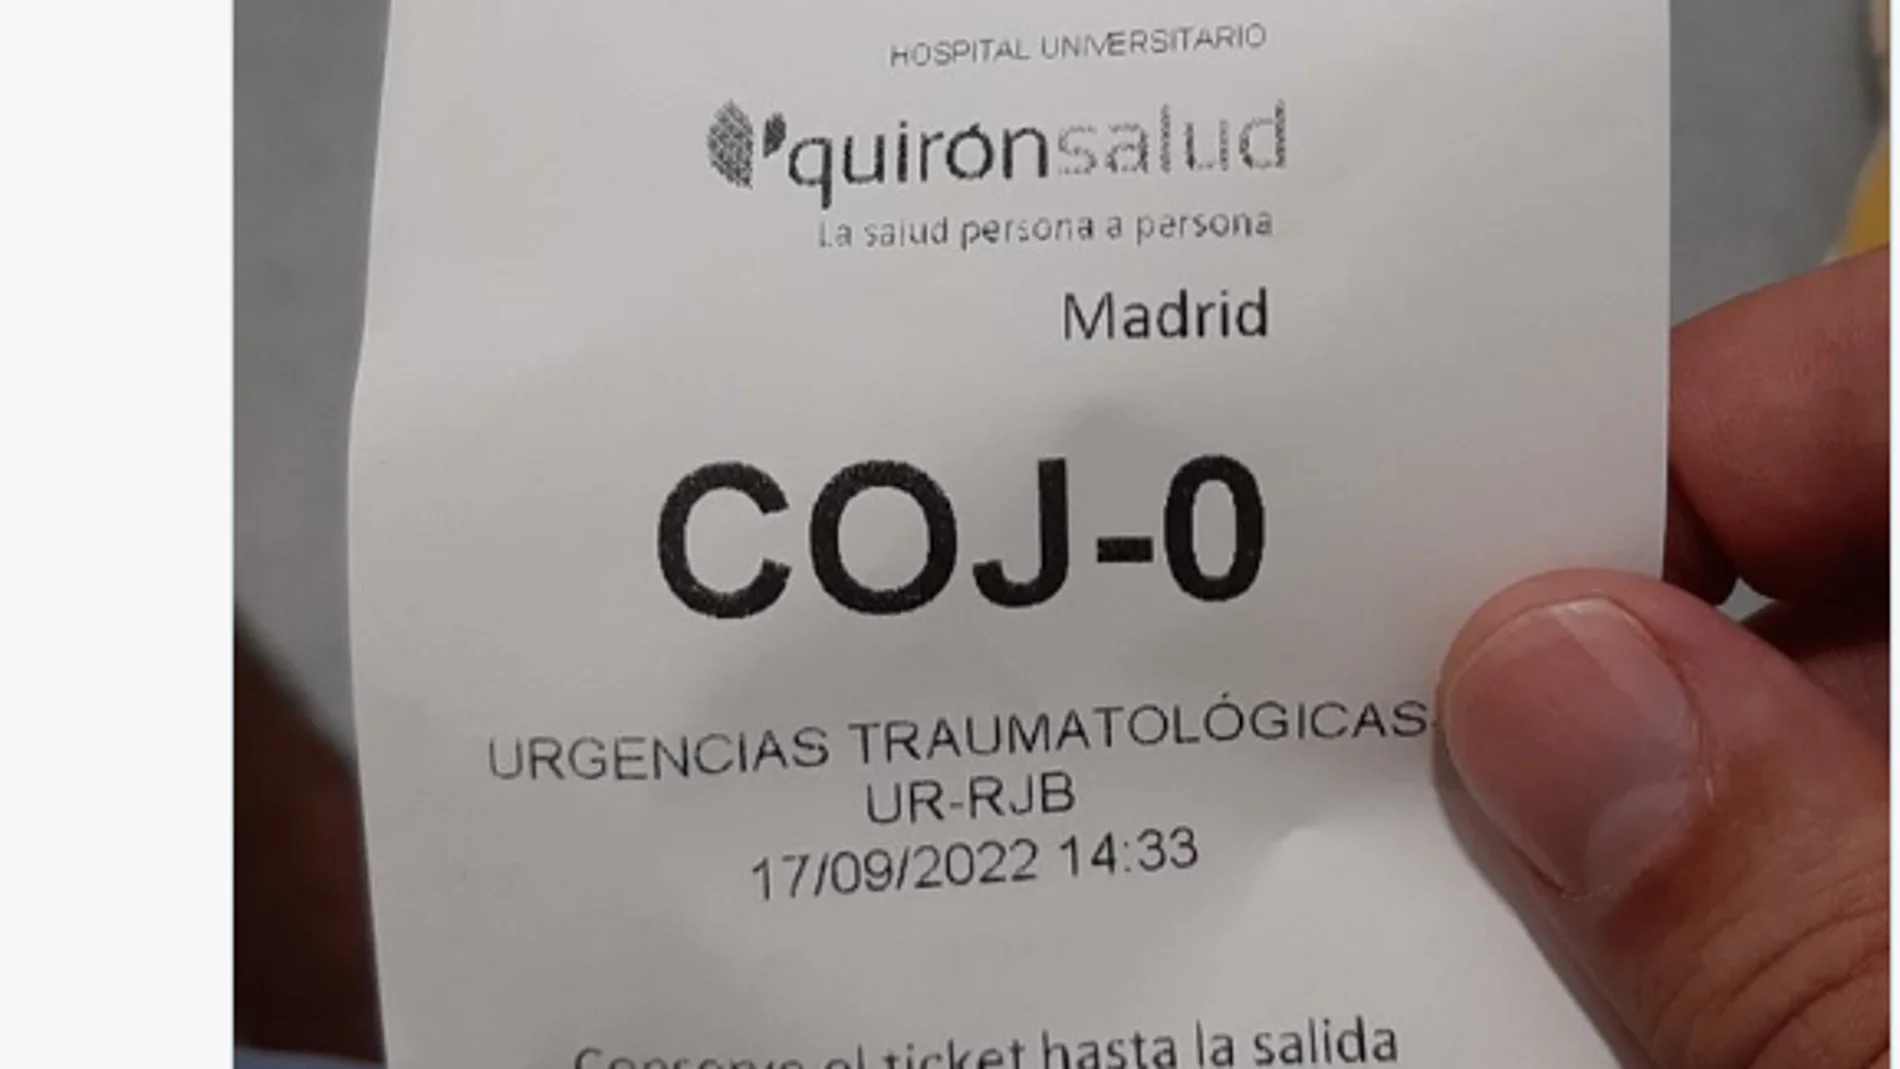 El ticket de un usuario al acudir a un Hospital por un esguince de rodilla